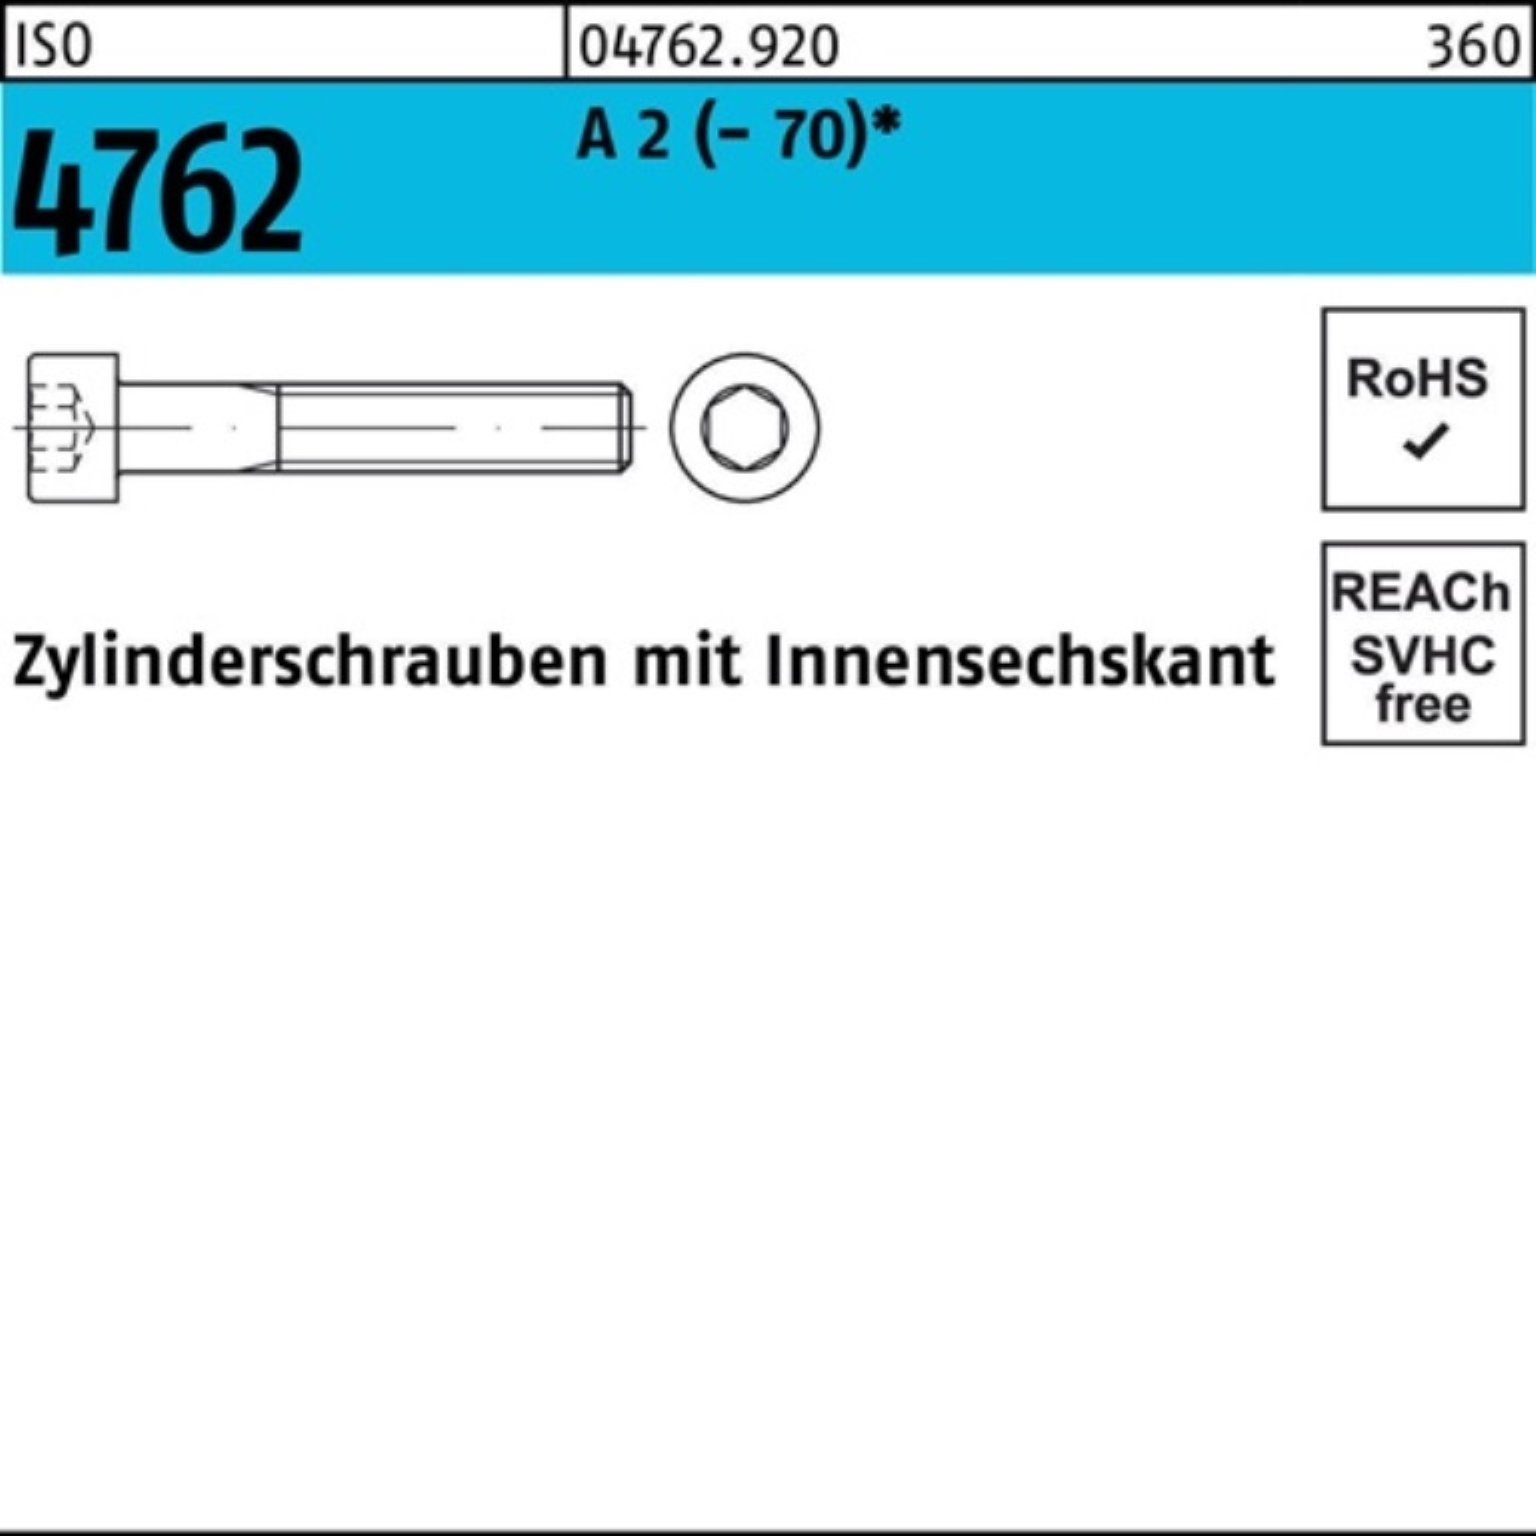 M4x ISO IS Zylinderschraube 6 Stück Zylinderschraube 4762 A 200er 200 Pack 2 Reyher Innen-6kt